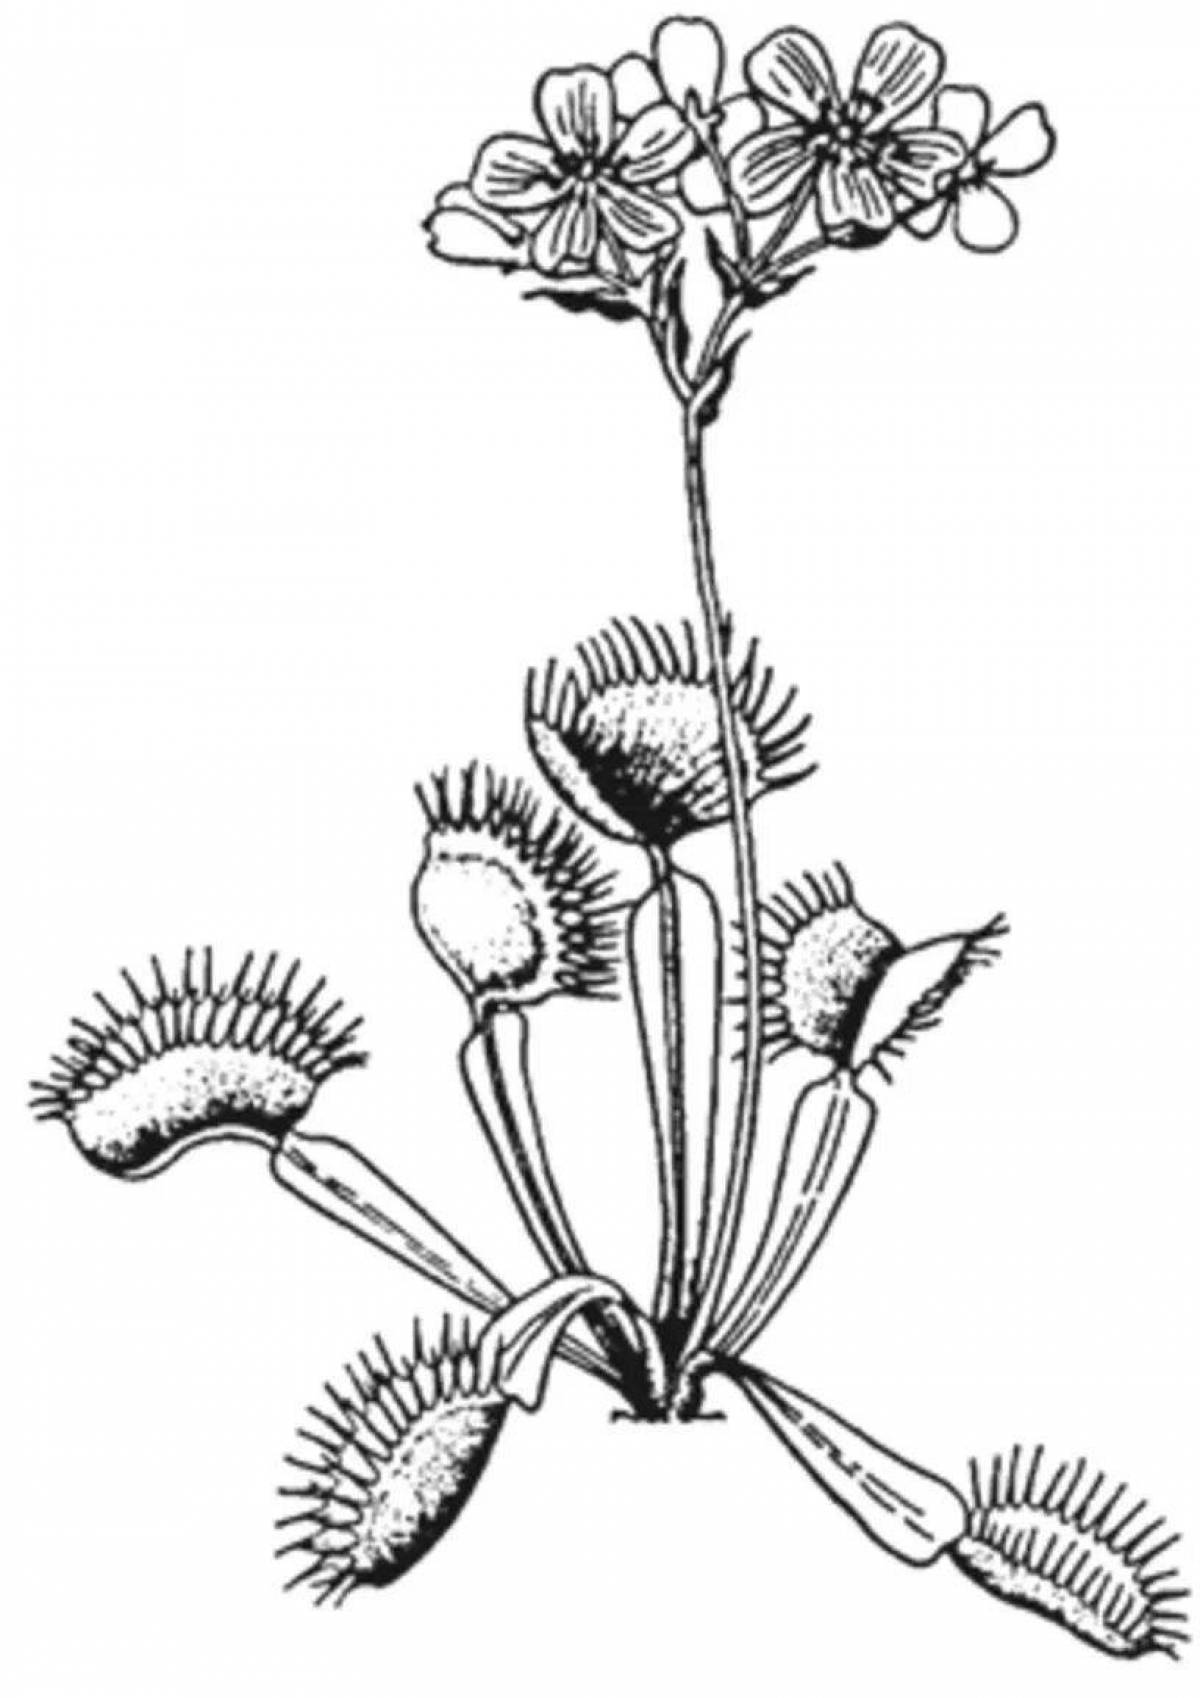 Charming venus flytrap coloring book